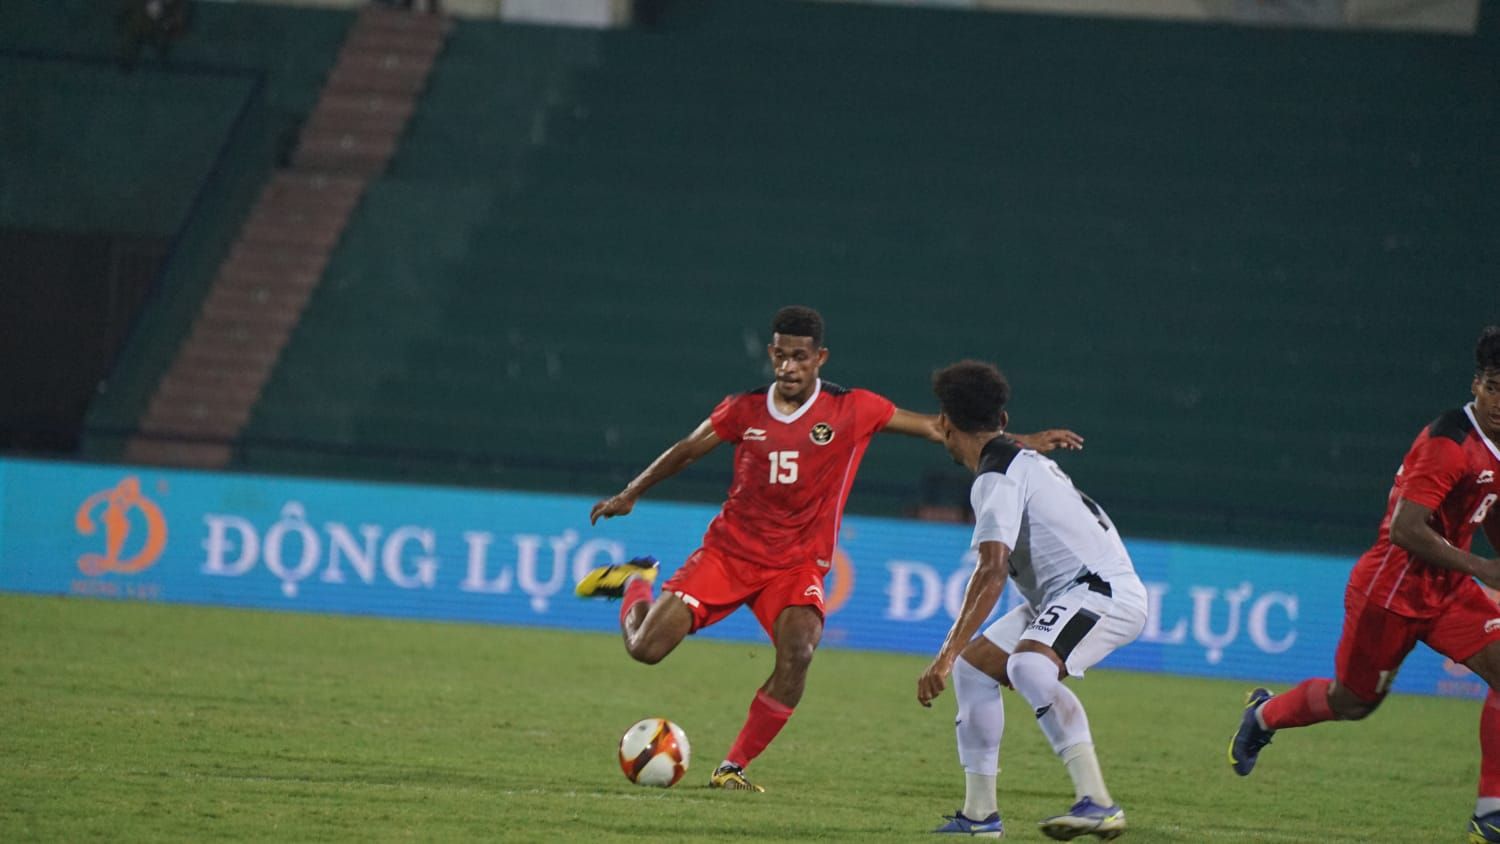 Gelandang timnas U-23 Indonesia, Ricky Kambuaya mencoba mengecoh satu pemain Timor Leste, Armindo de Almeida dalam laga sepak bola putra SEA Games 2021, 10 Maret 2022.